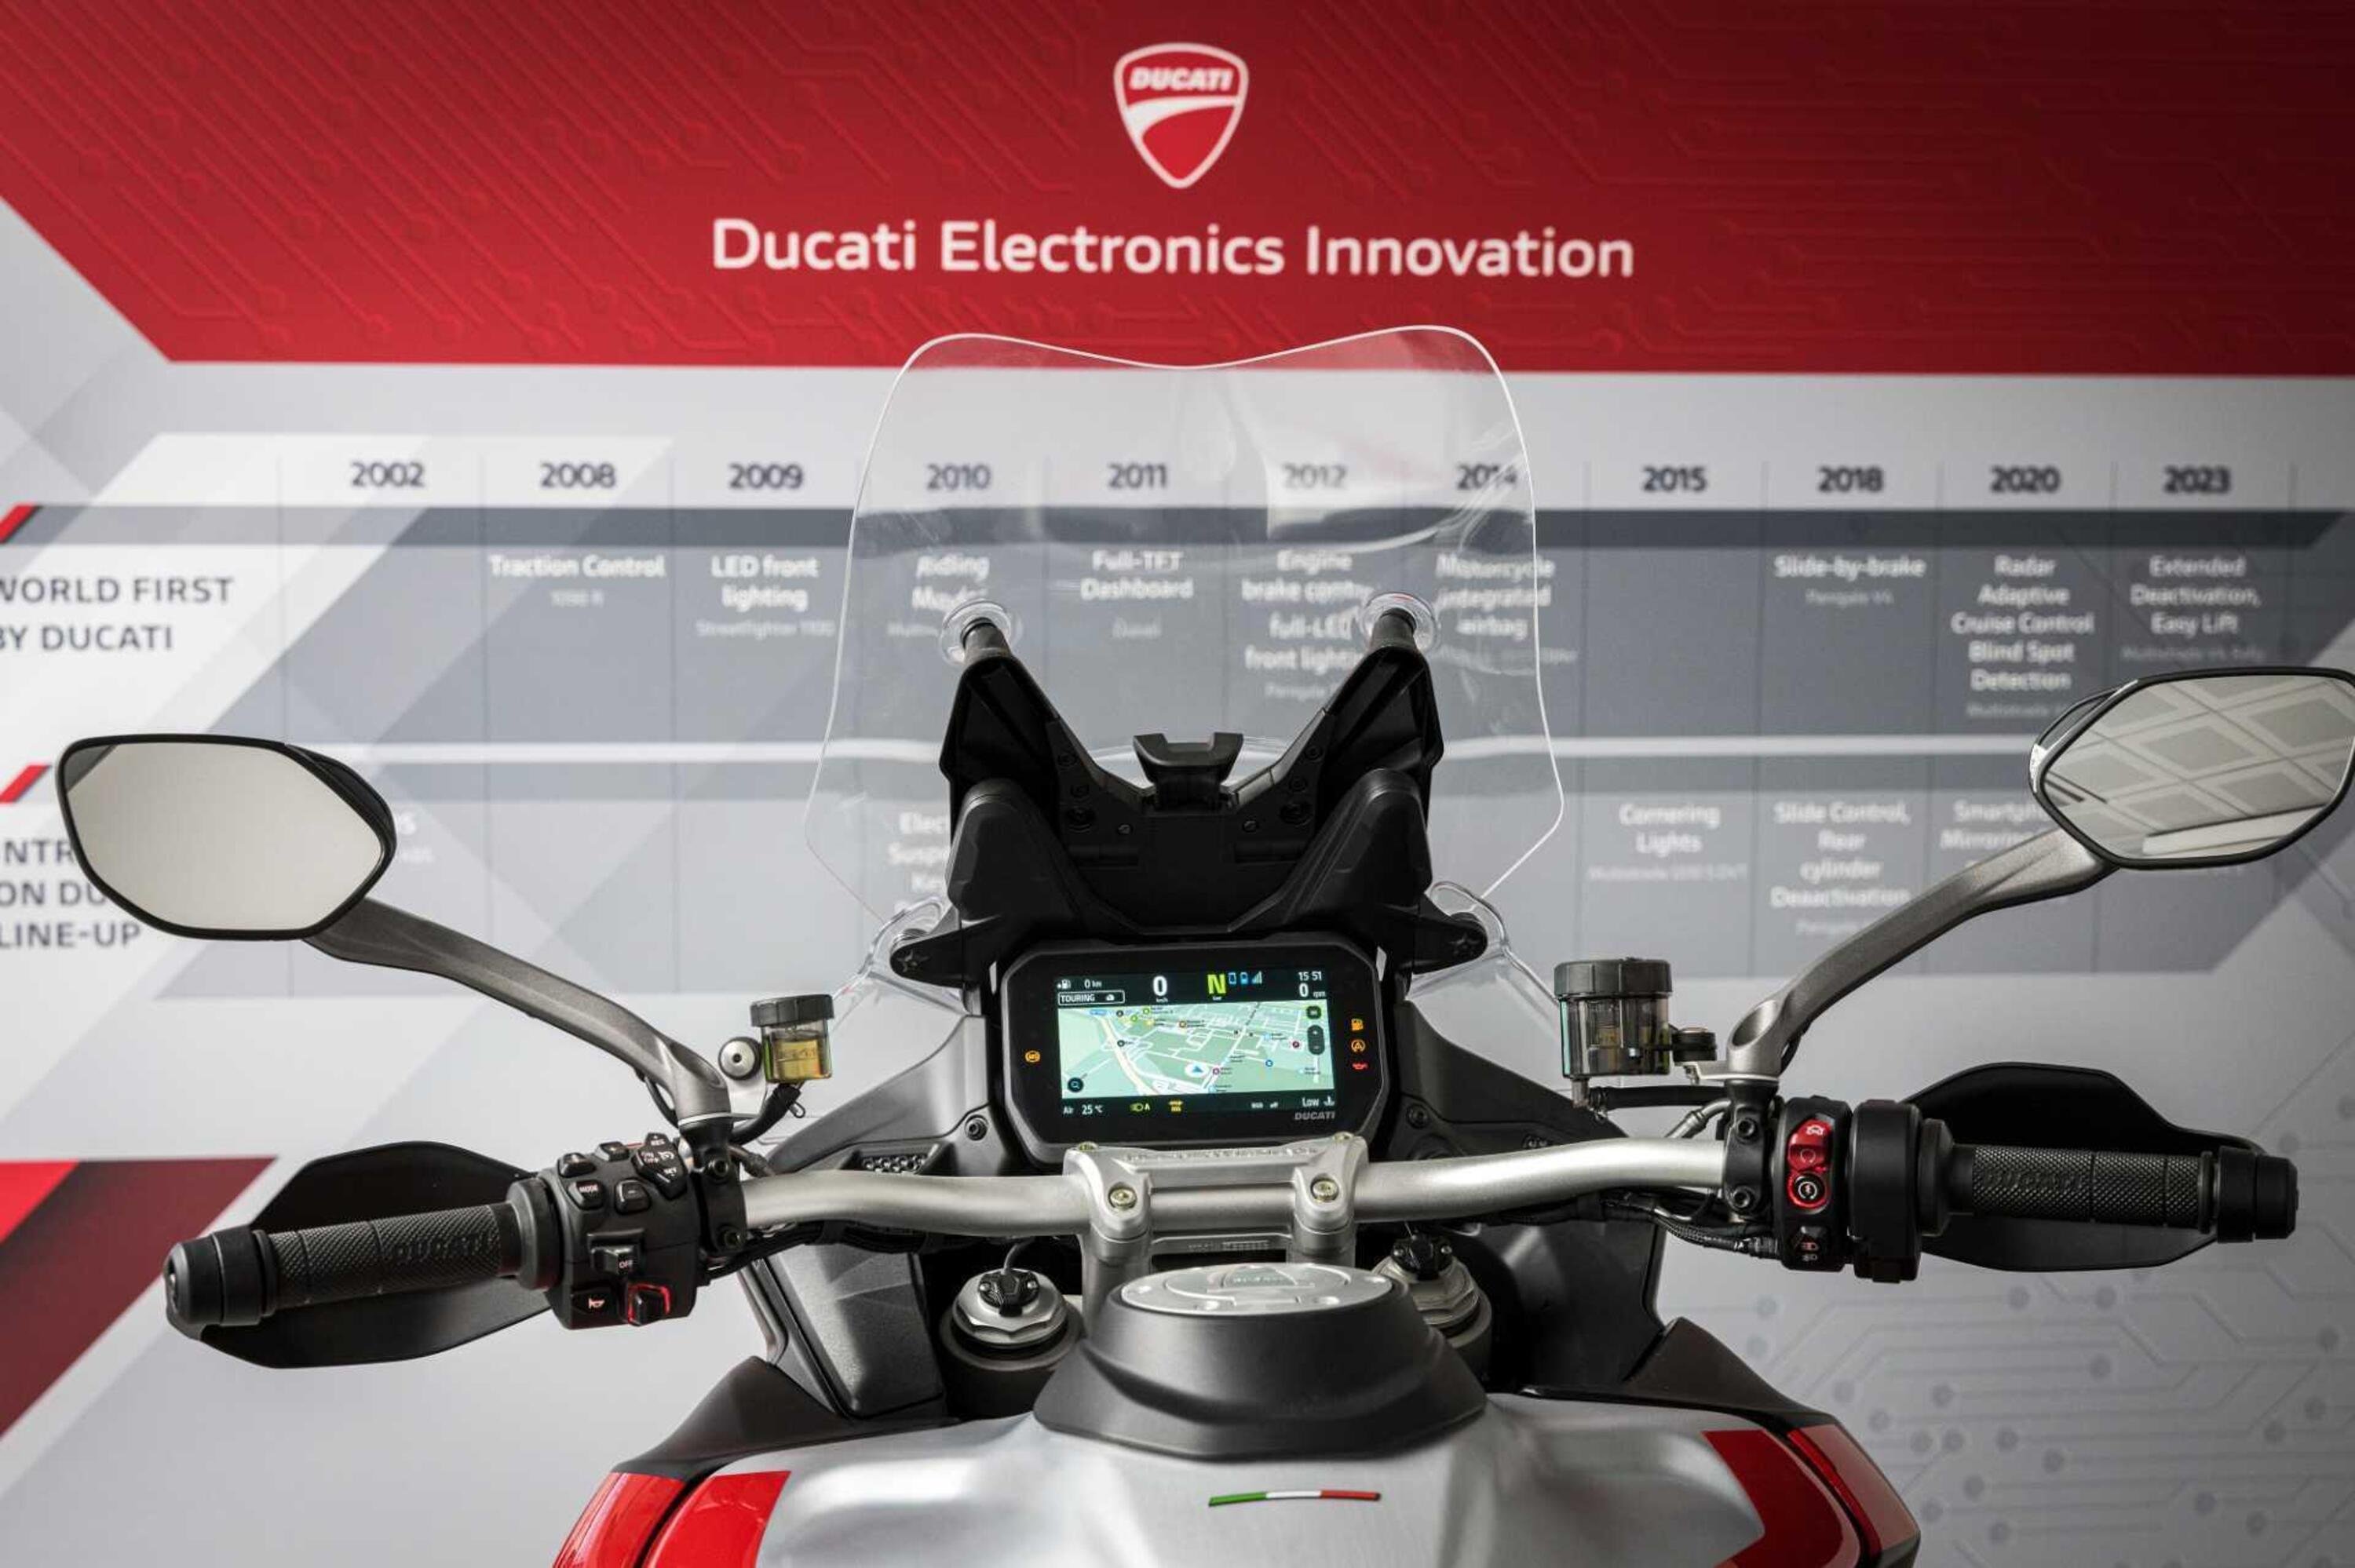 L&#039;elettronica delle moto e il &quot;metodo Ducati&quot;: un viaggio nell&#039;innovazione lungo 15 anni